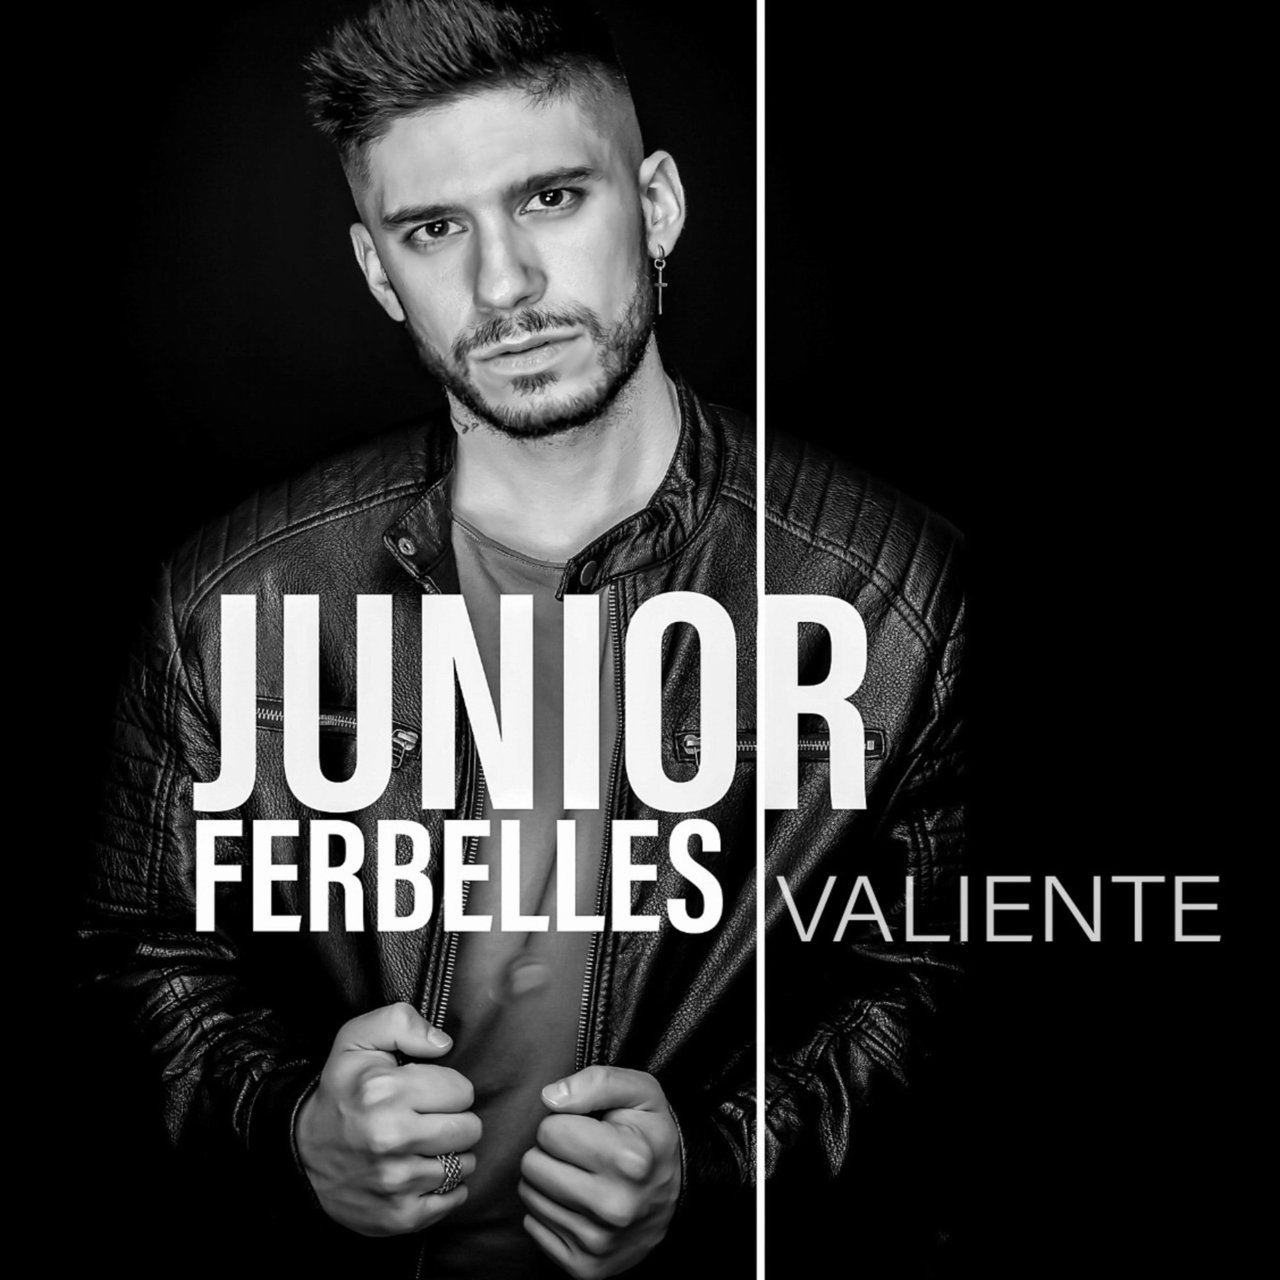 Junior Ferbelles — Valiente cover artwork